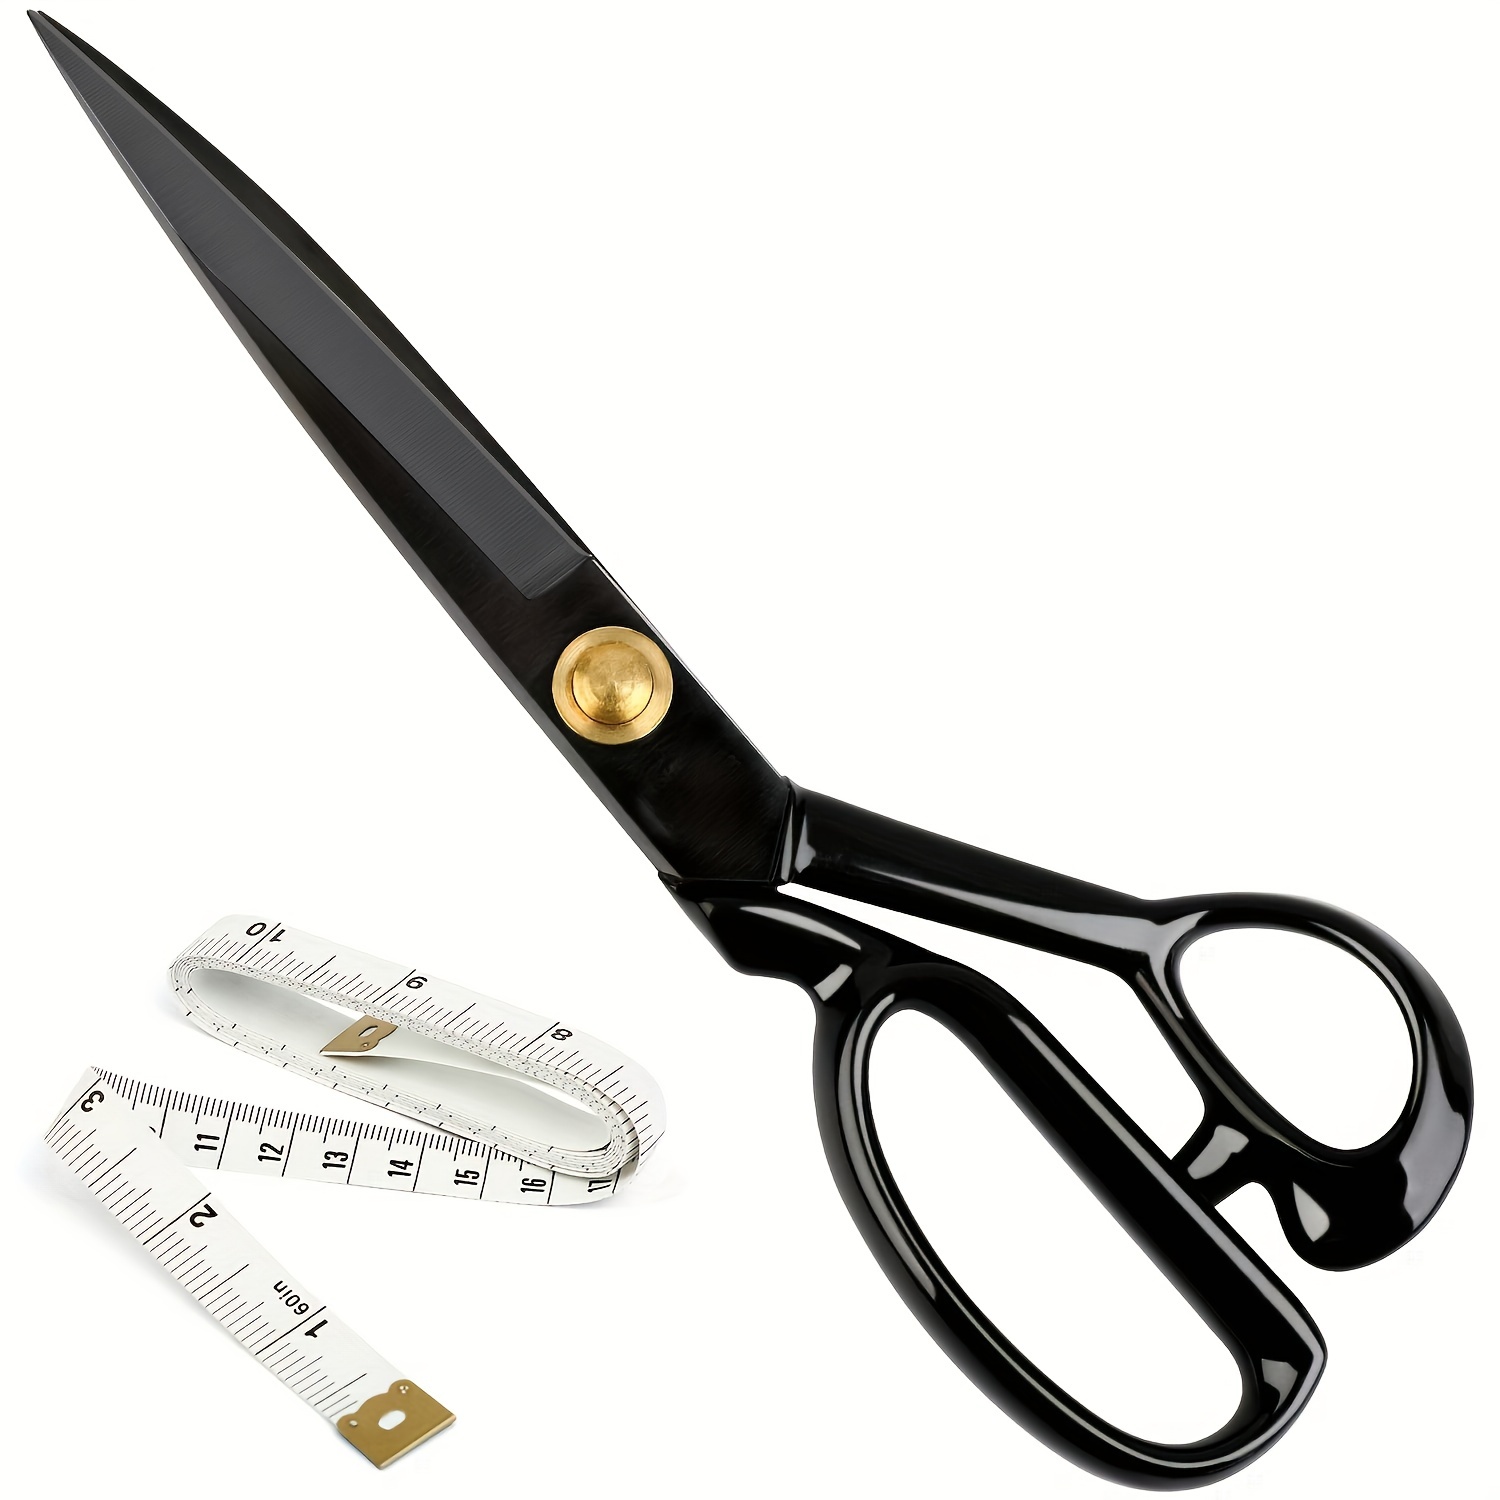 Heavy Duty 8 inch Scissors